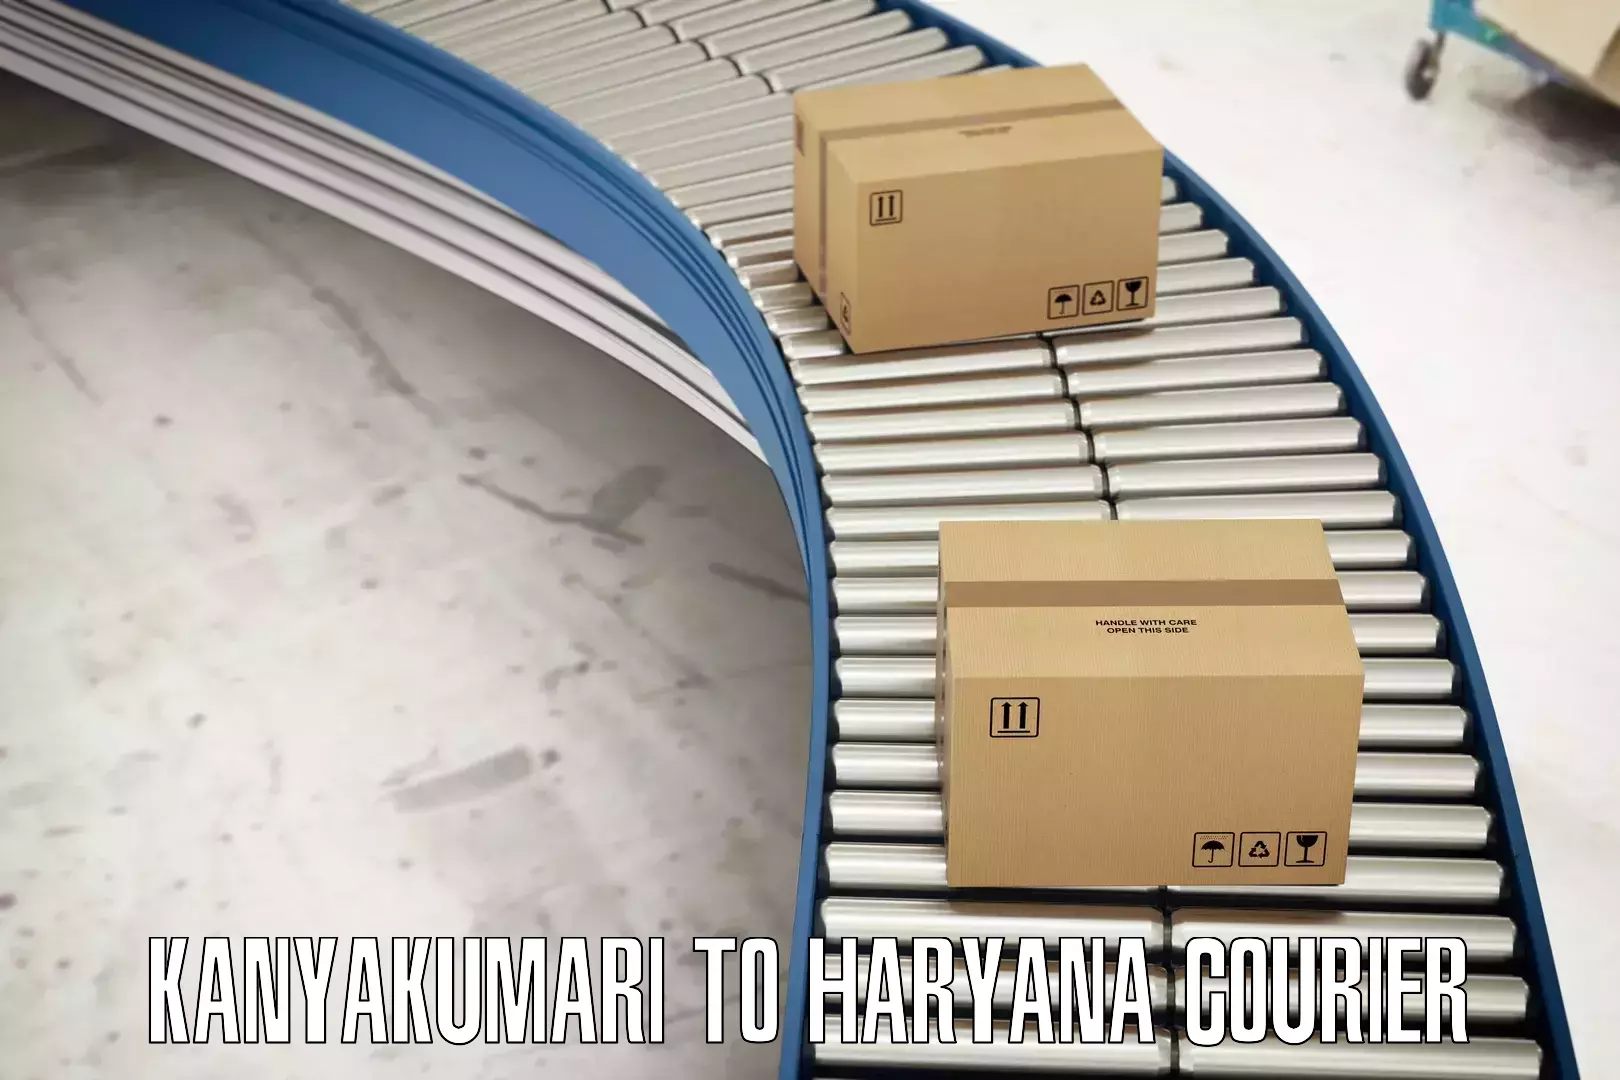 Flexible shipping options Kanyakumari to Narwana